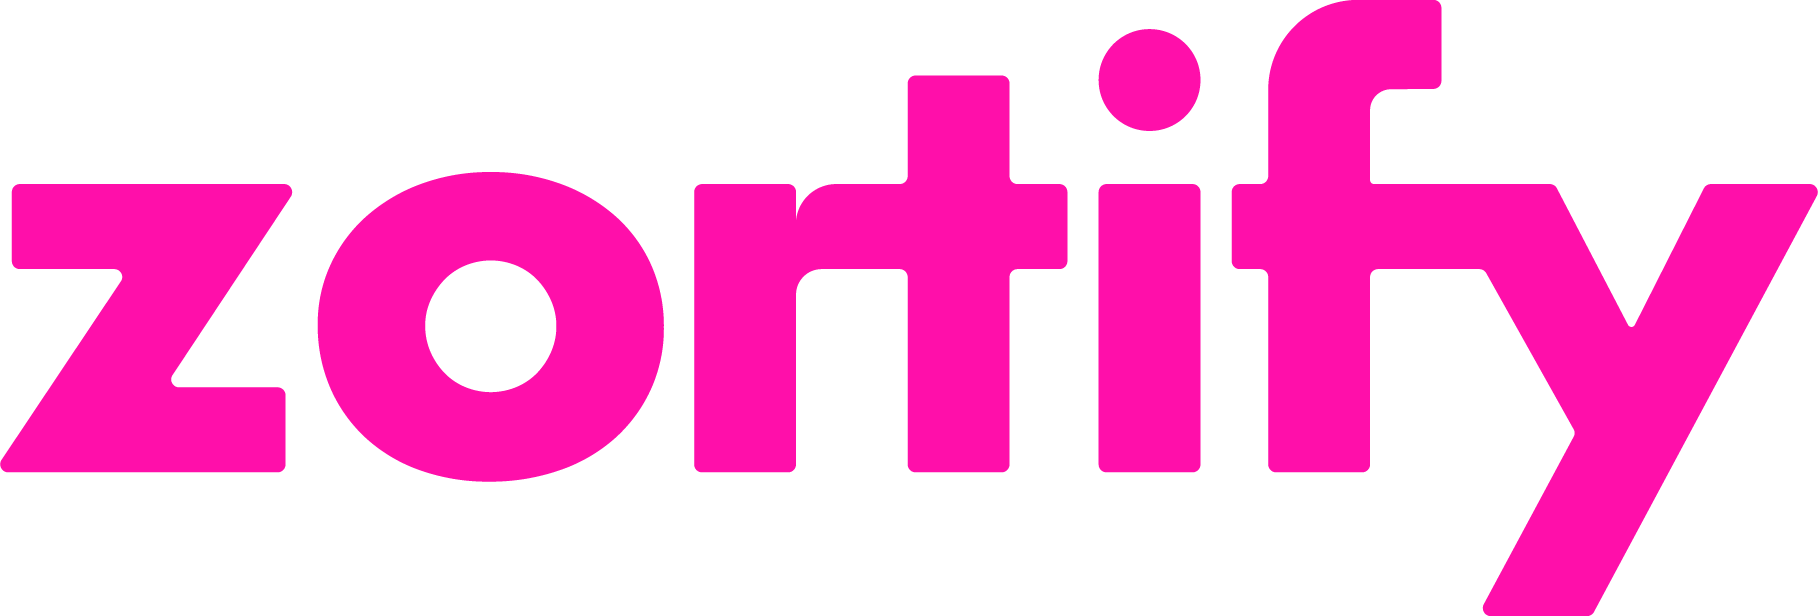 Zortify logo